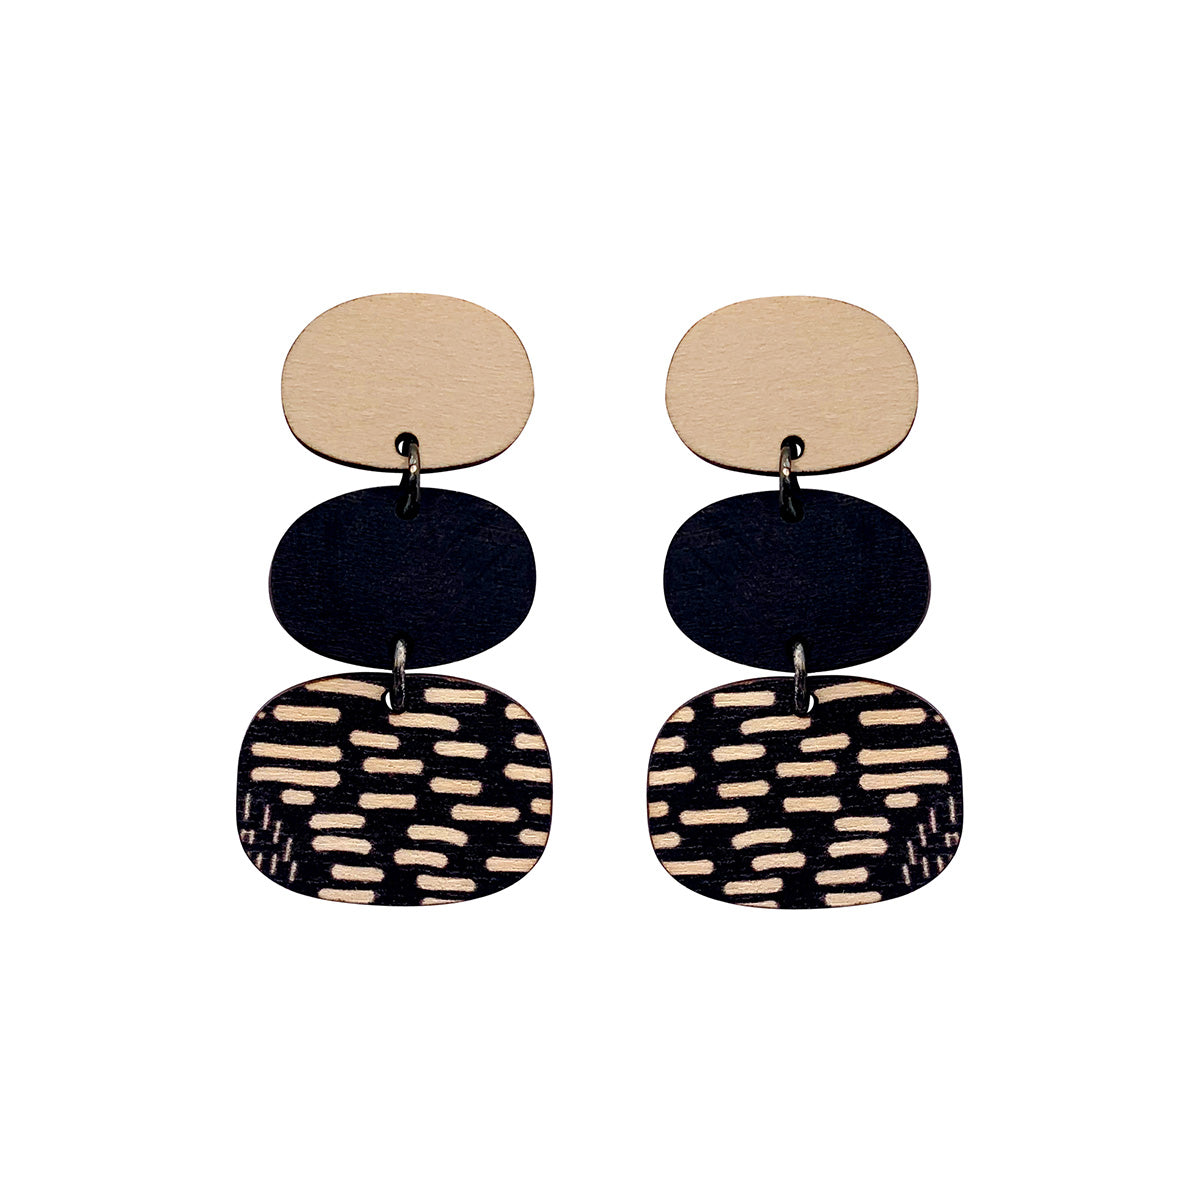 3 tier Earrings in black and Night Garden pattern